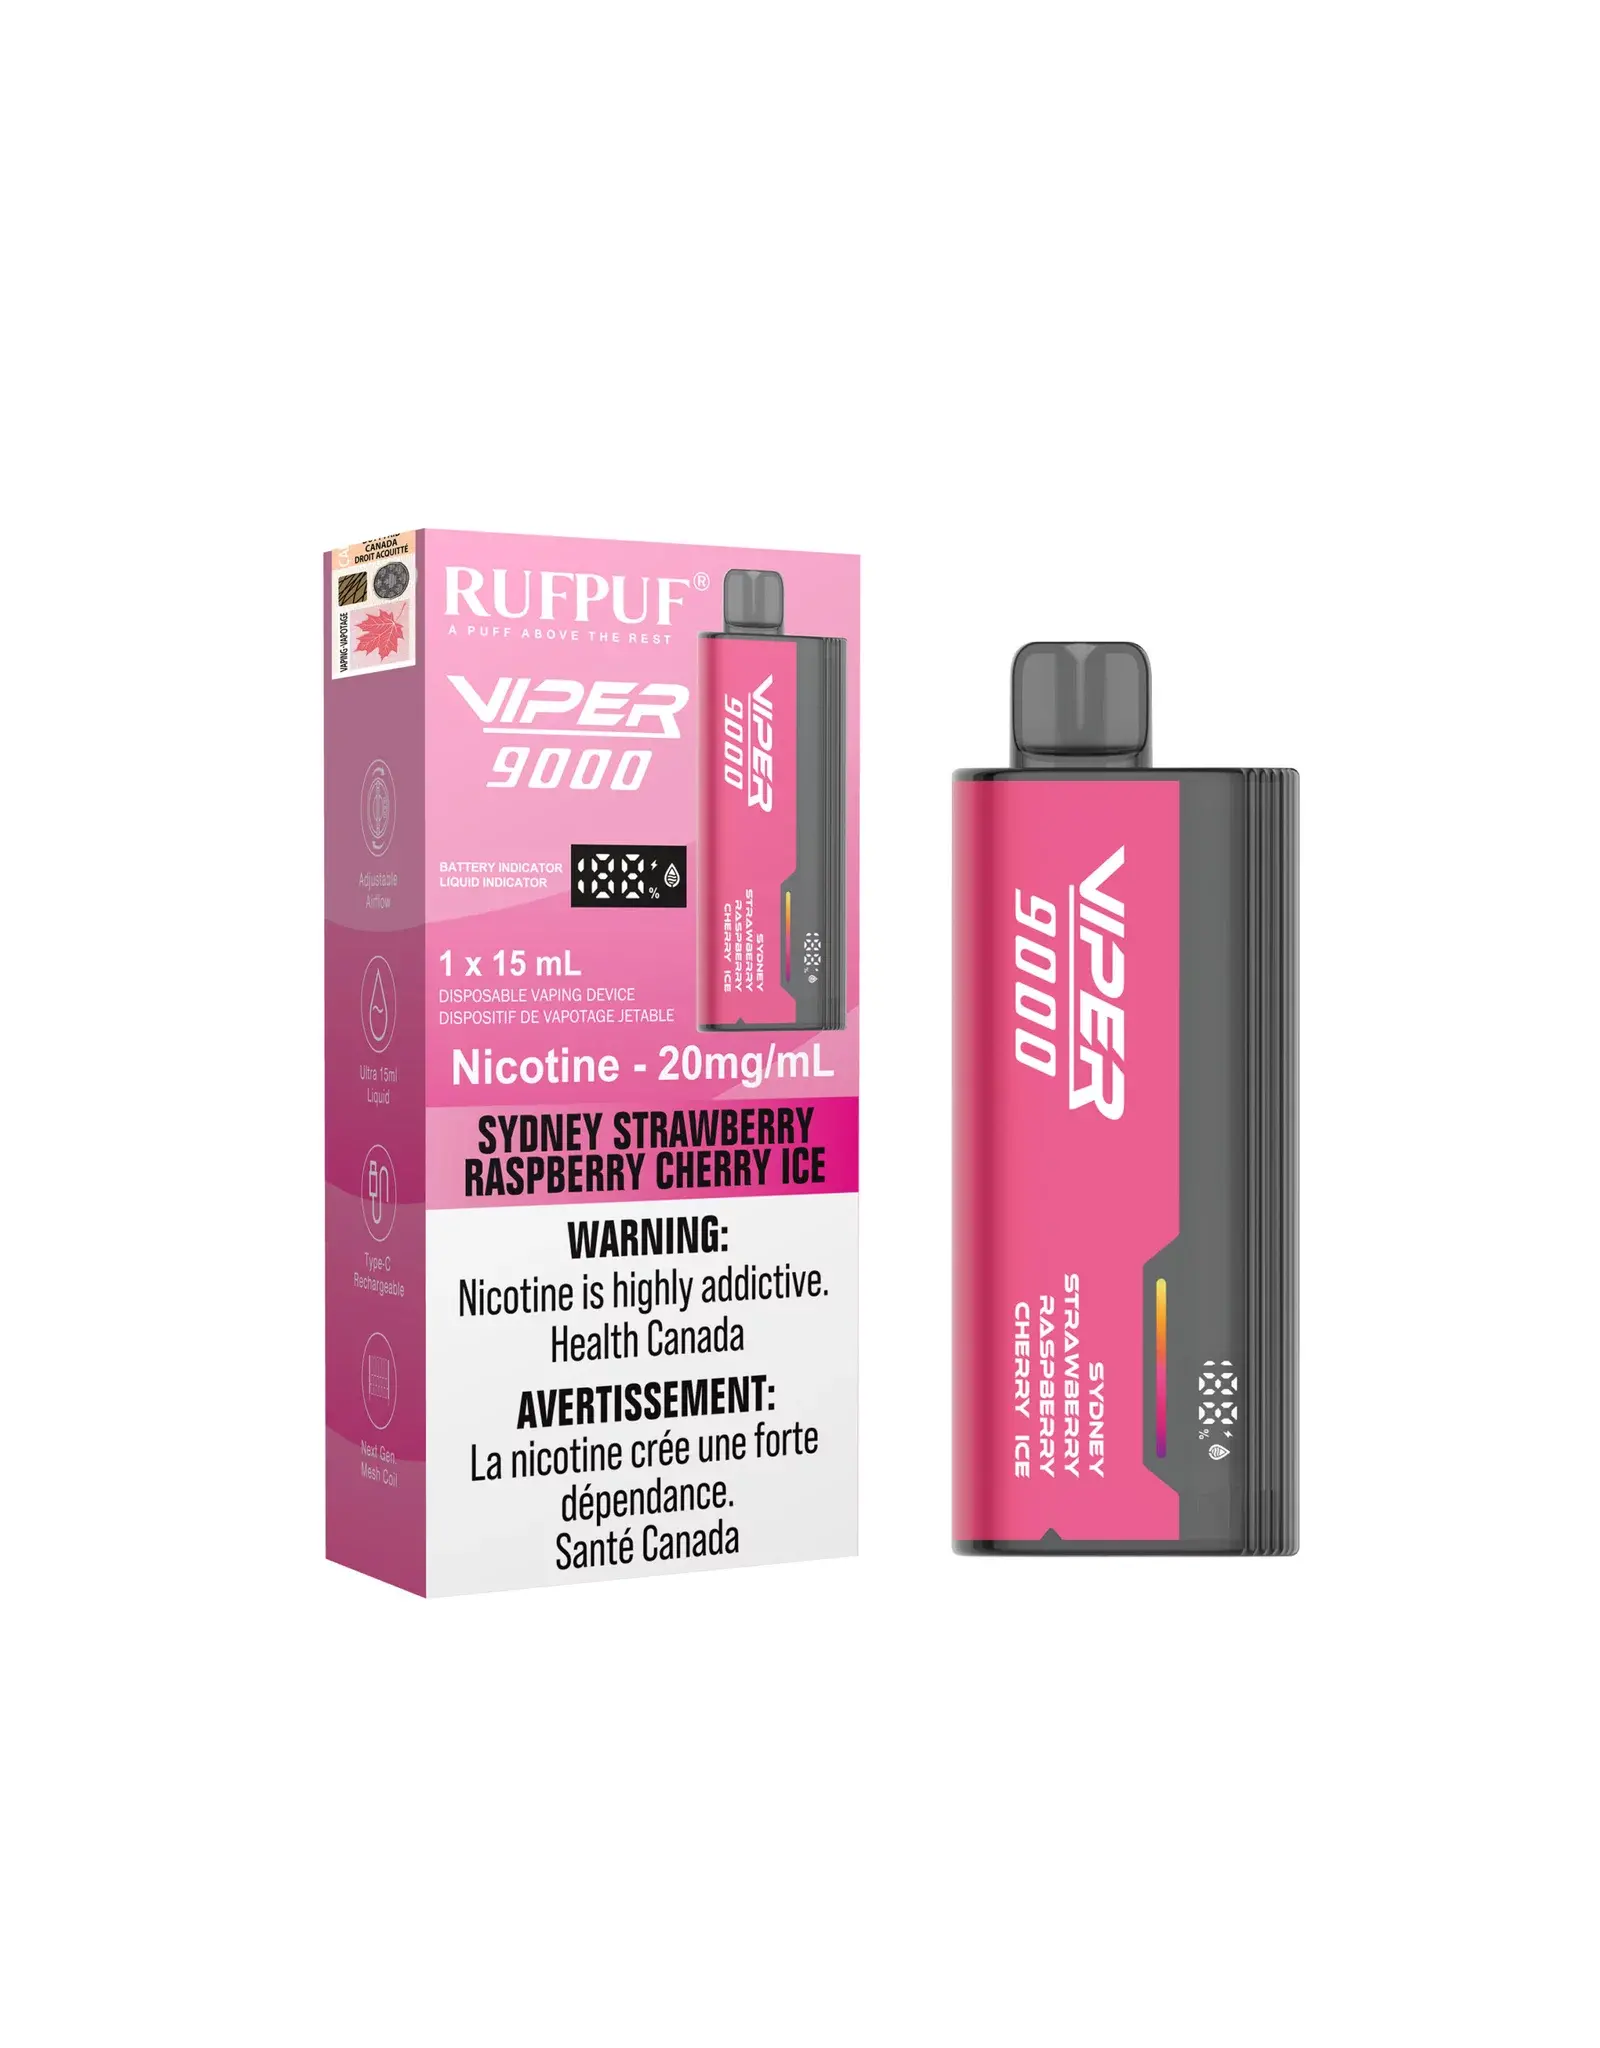 Rufpuf G Core Rufpuf Viper 9000 Disposable Device (15mL)